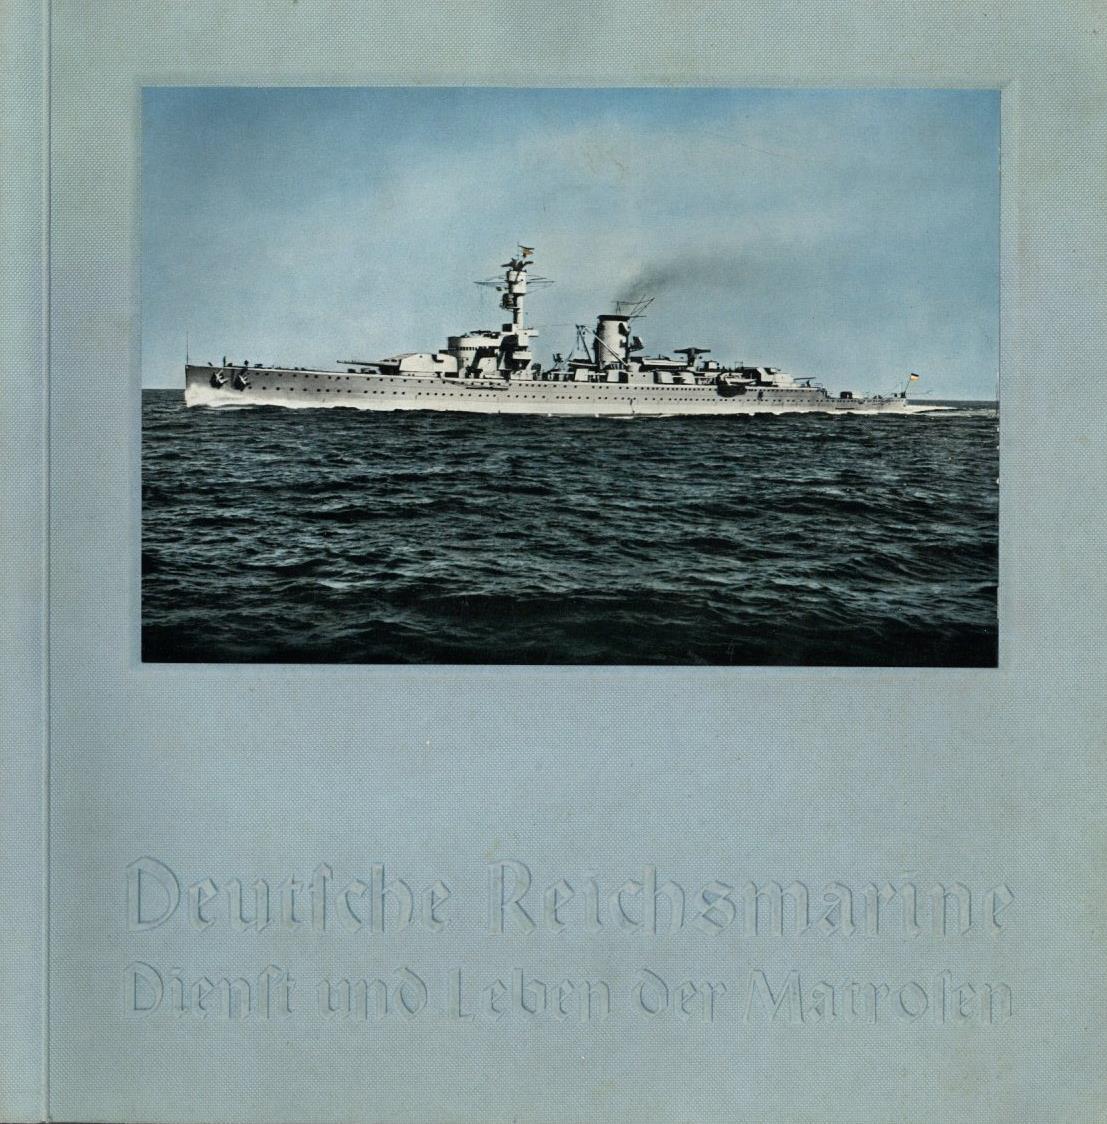 Sammelbild-Album Deutsche Reichsmarine Dienst Und Leben Der Matrosen Max Burchartz 1934 Kompl. II - War 1939-45